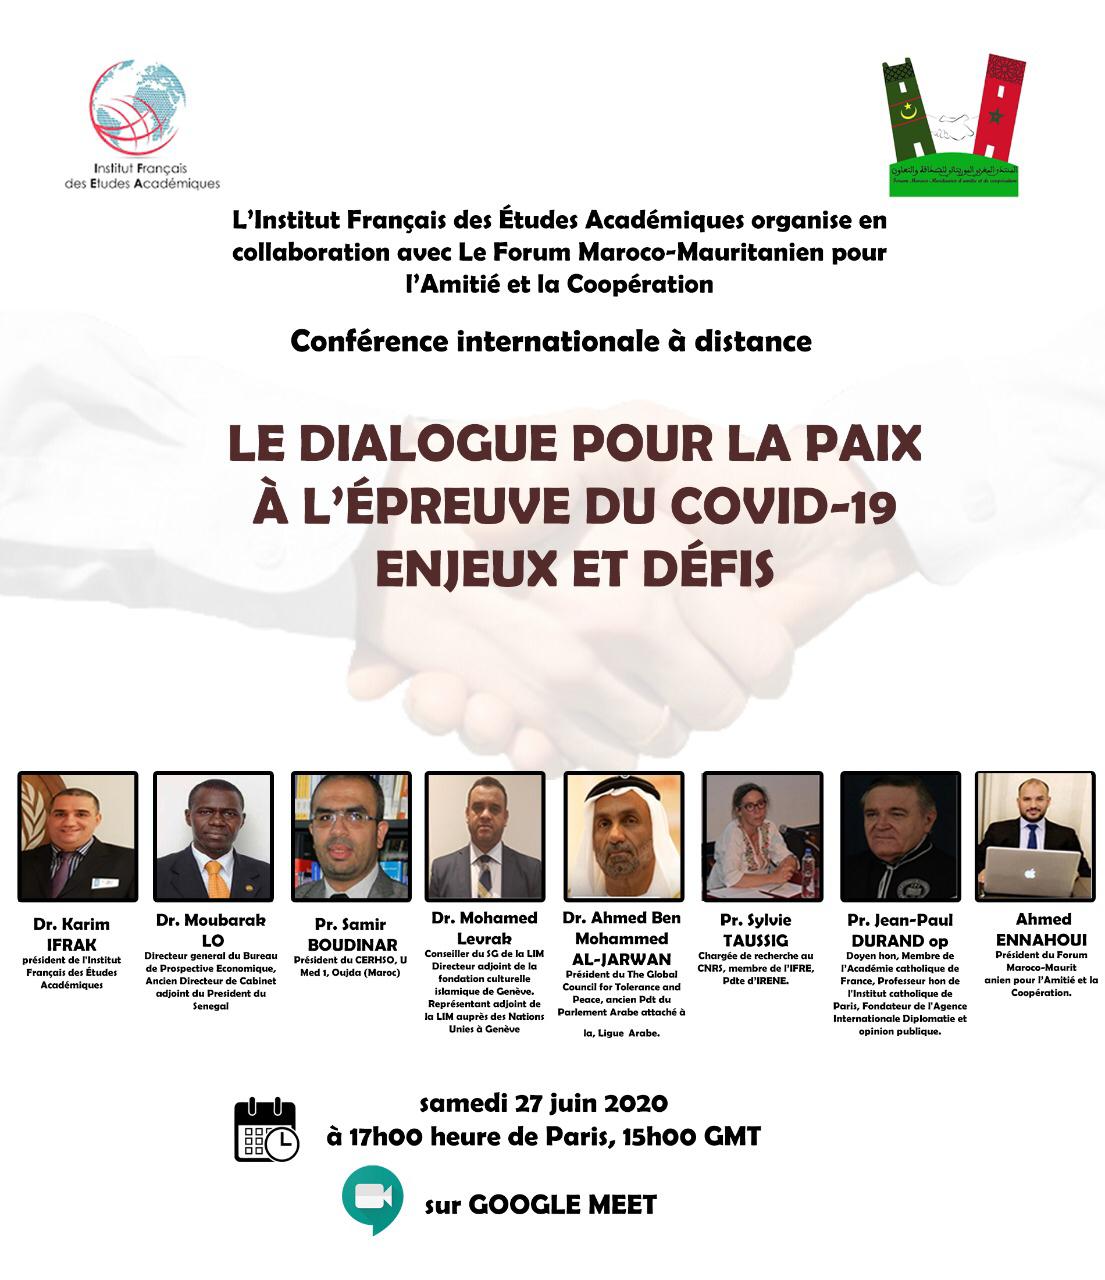 فرانسیسی انسٹیوٹ برائے اکیڈمک اسٹڈیز اور مراکشی موریطانی فورم برائے دوستی نے میثاق مکہ مکرمہ کے کردار کو سراہا